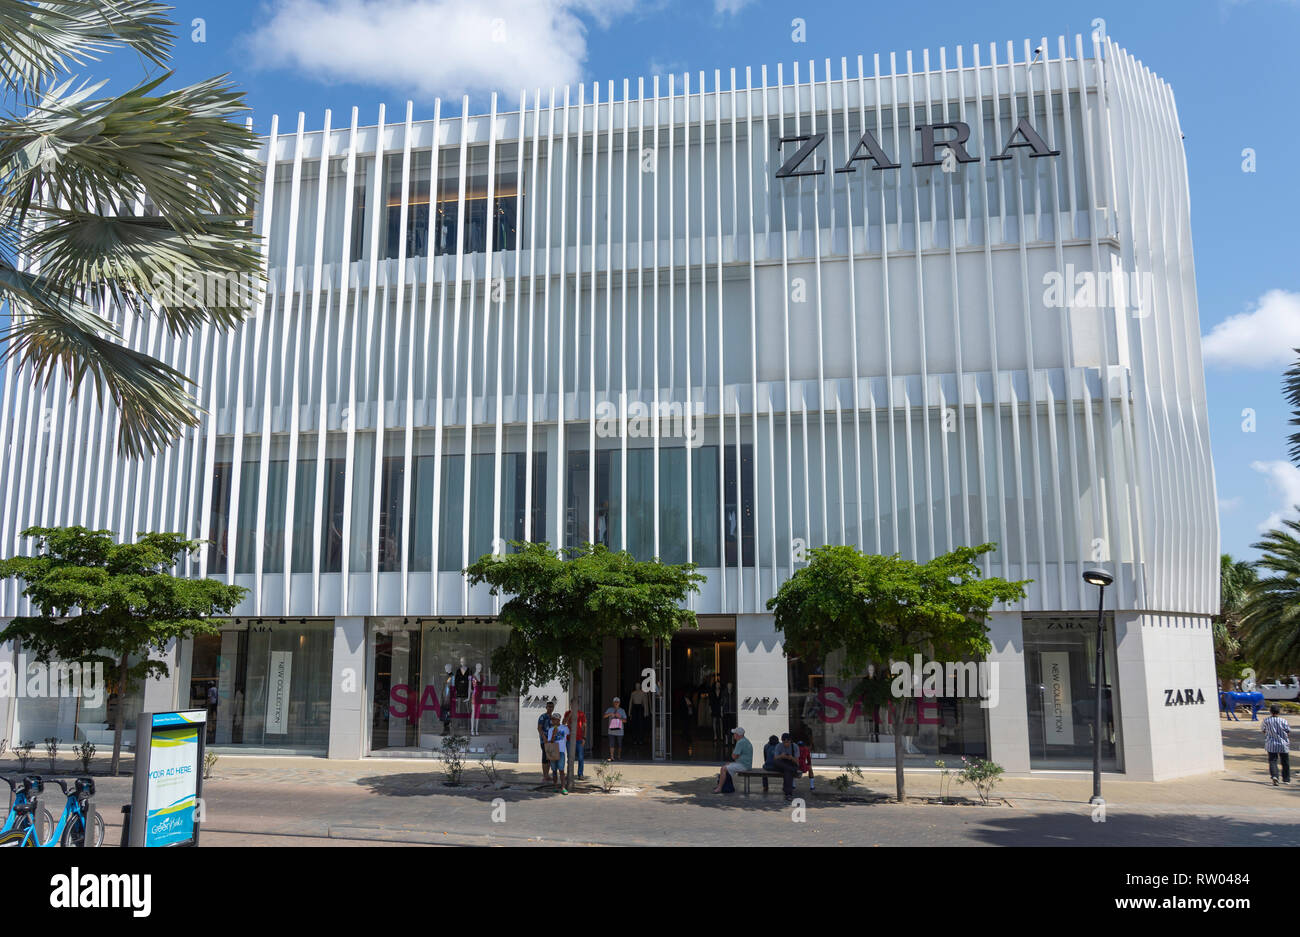 Zara Department Store, Plaza Daniel Leo, Oranjestad, Aruba, ABC Islands,  Leeward Antilles, Caribbean Stock Photo - Alamy